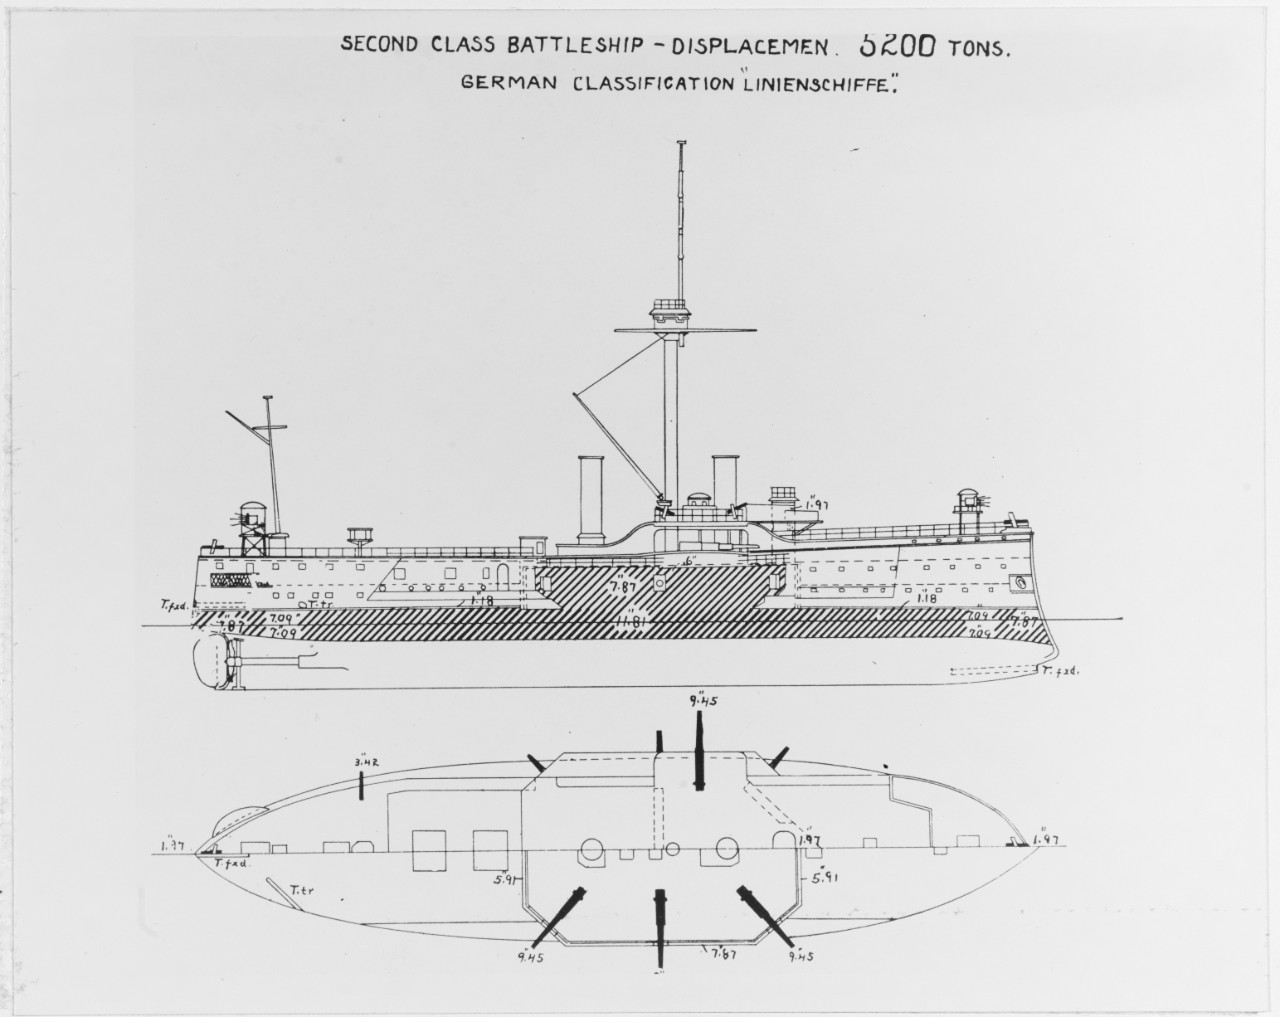 OLDENBURG (German battleship, 1884-1919)